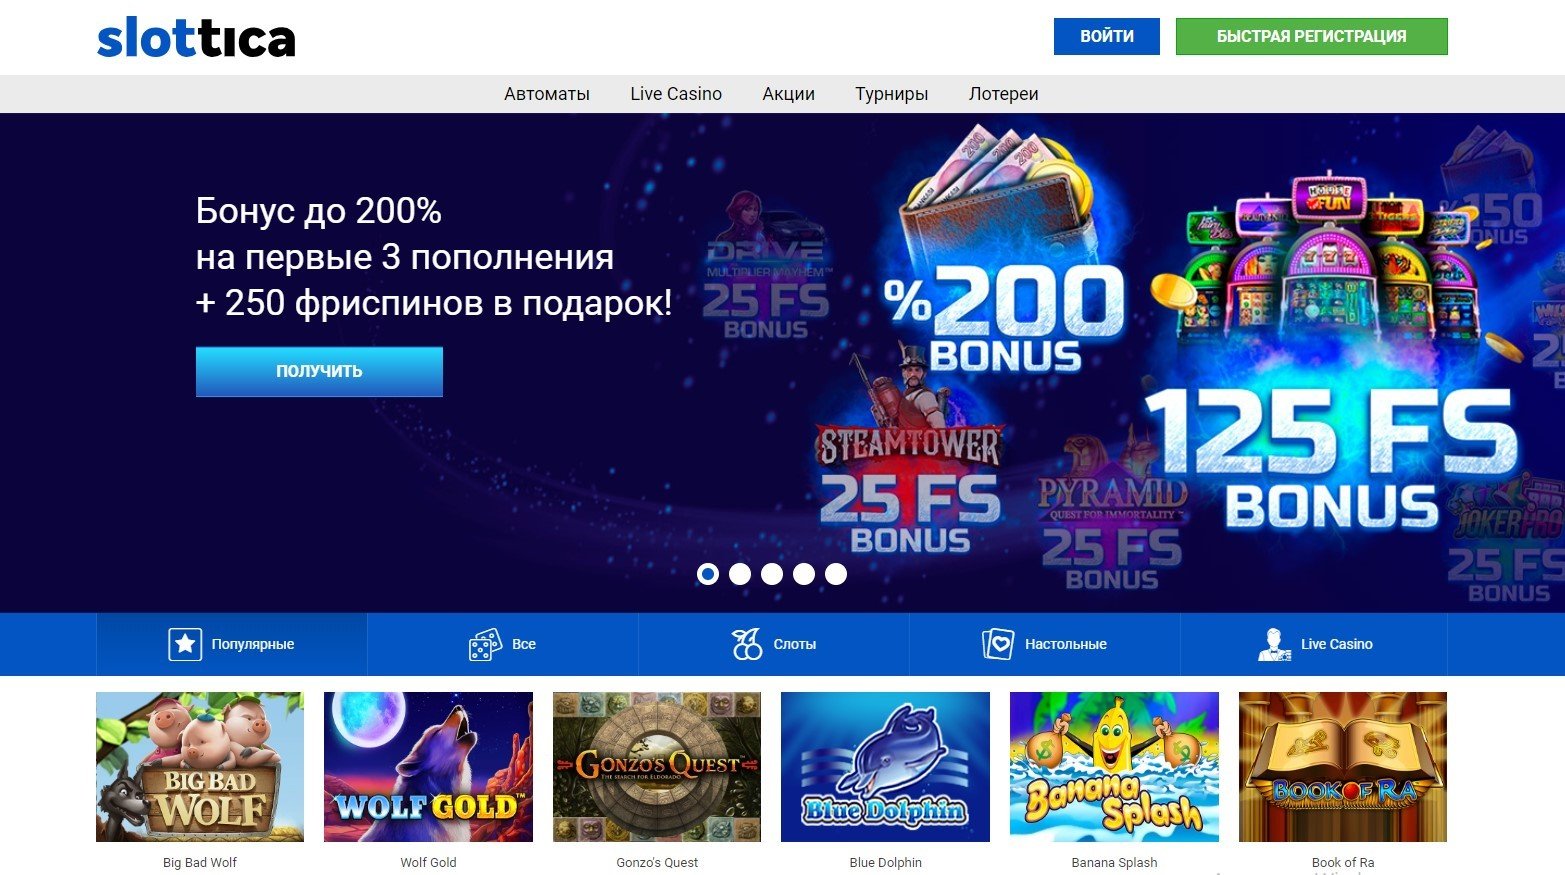 50 бесплатных вращений за регистрацию в онлайн казино